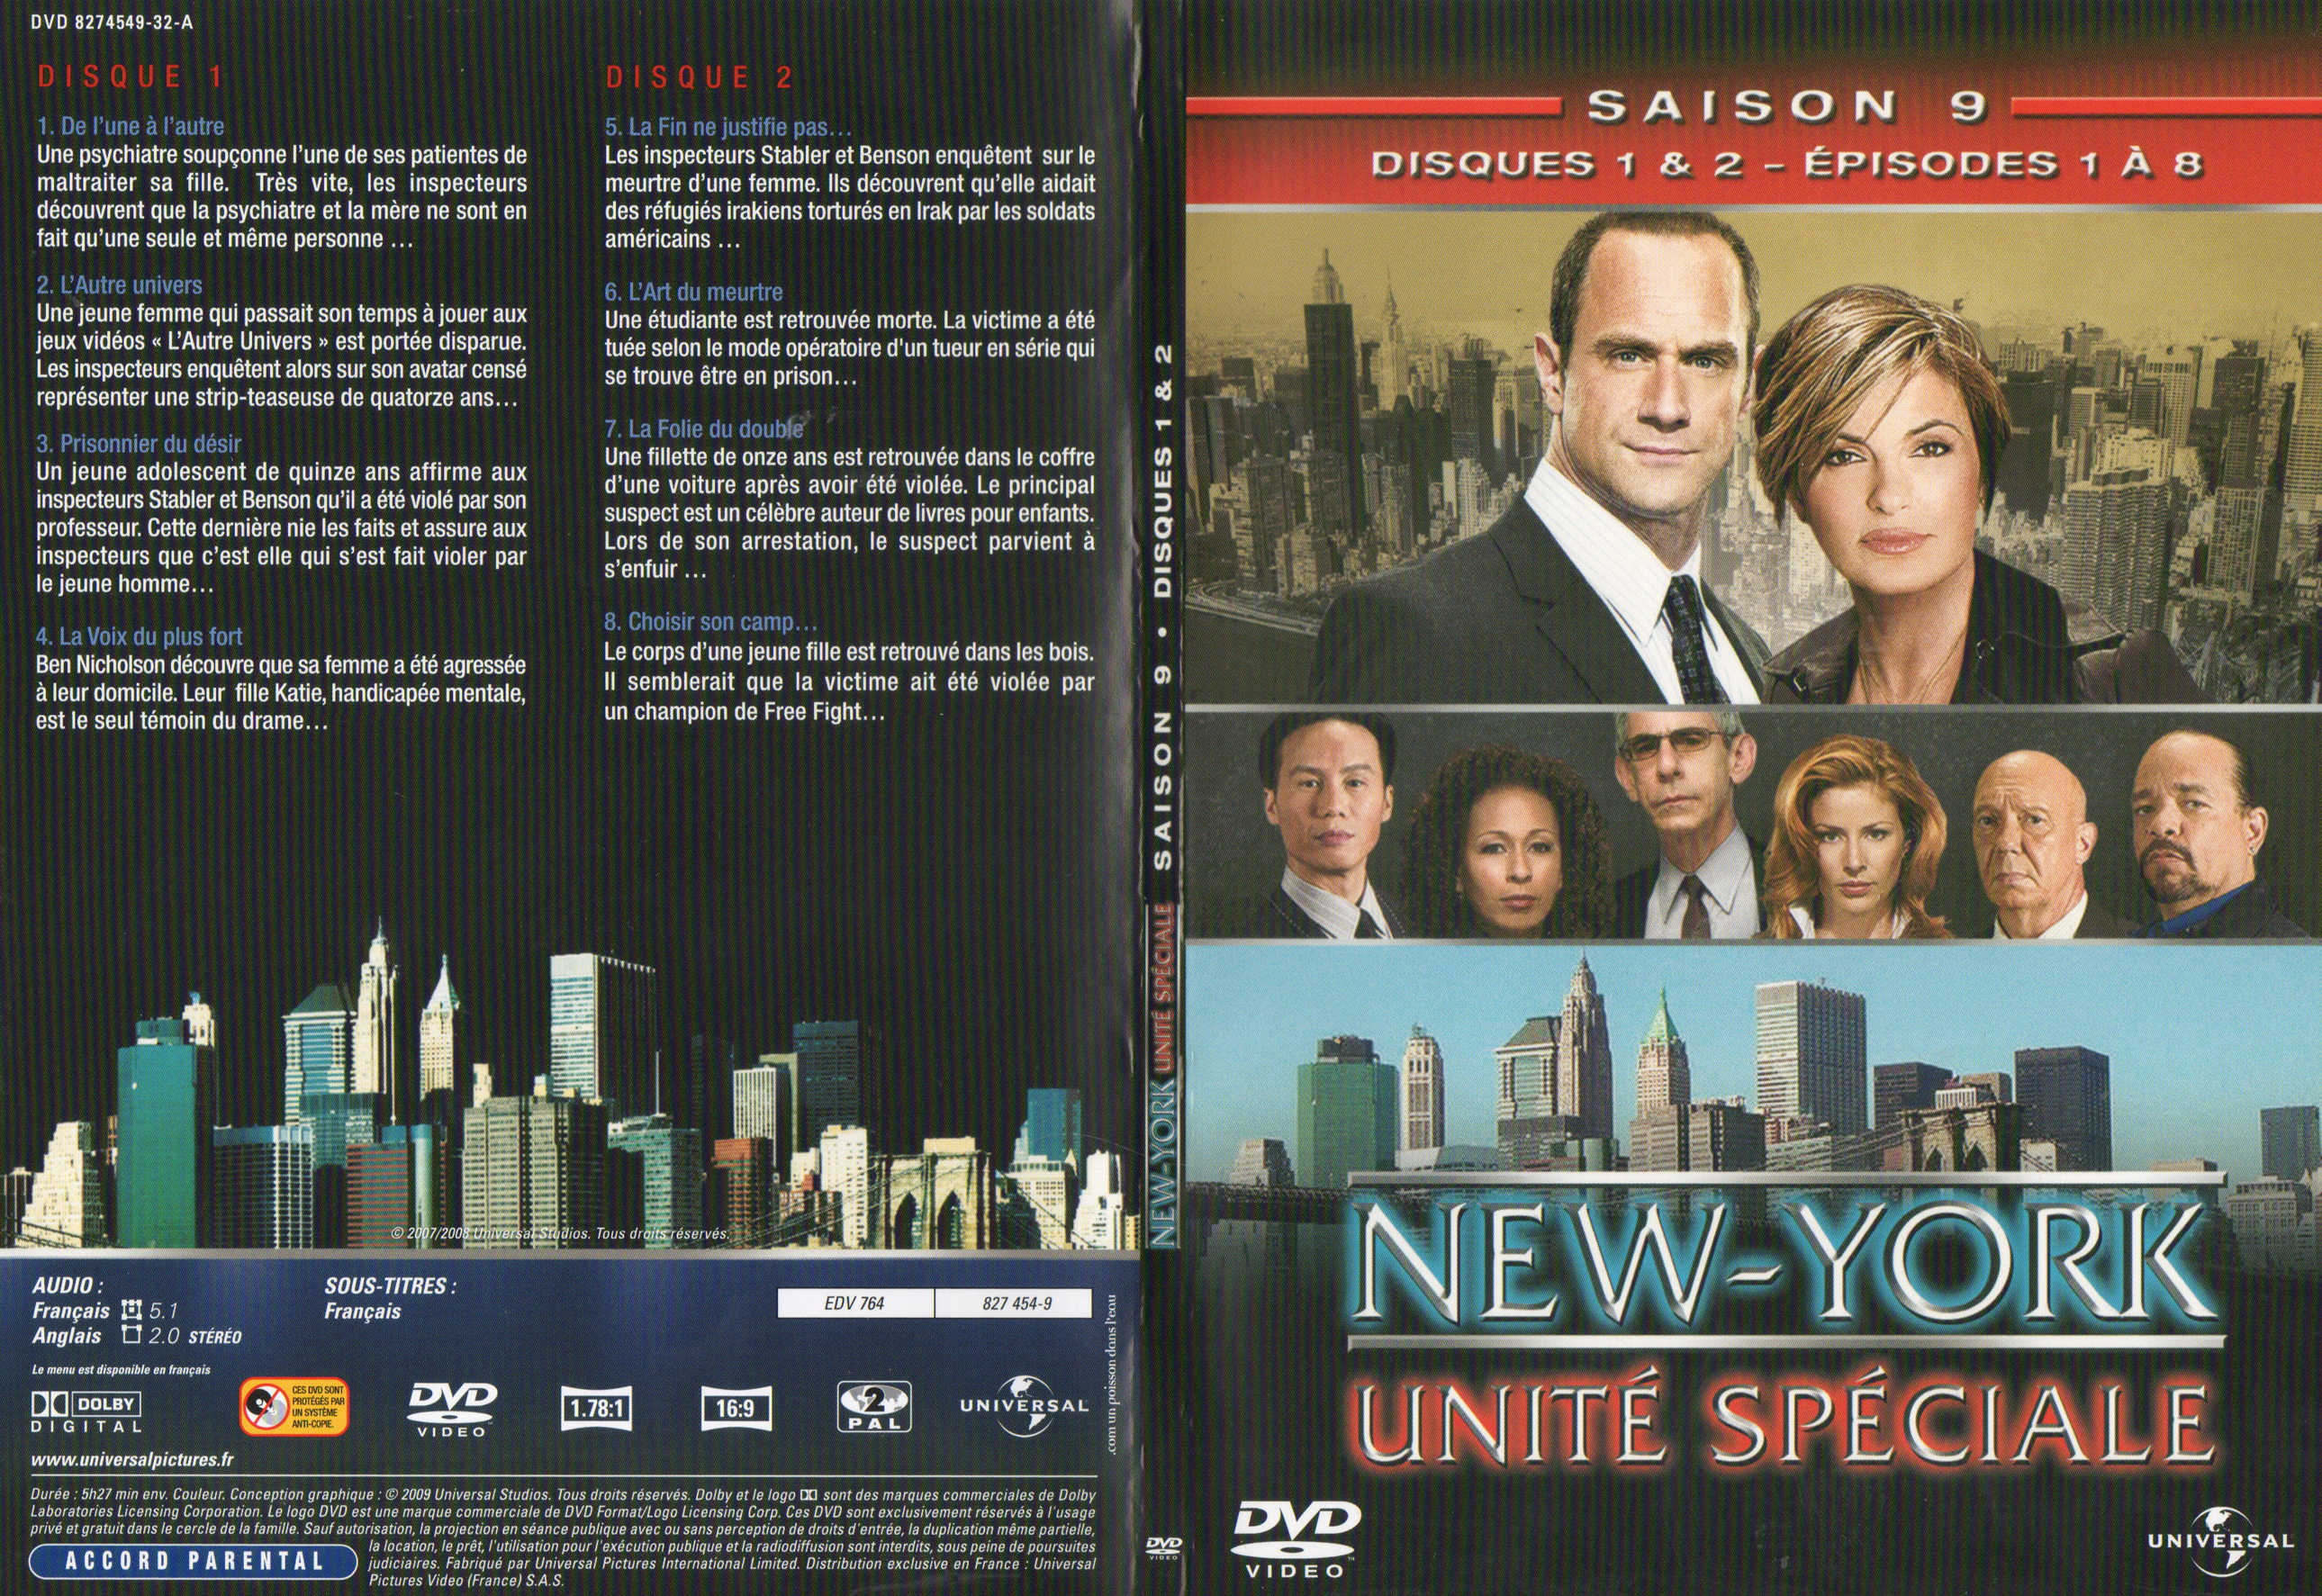 Jaquette DVD New York unit spciale saison 9 DVD 1